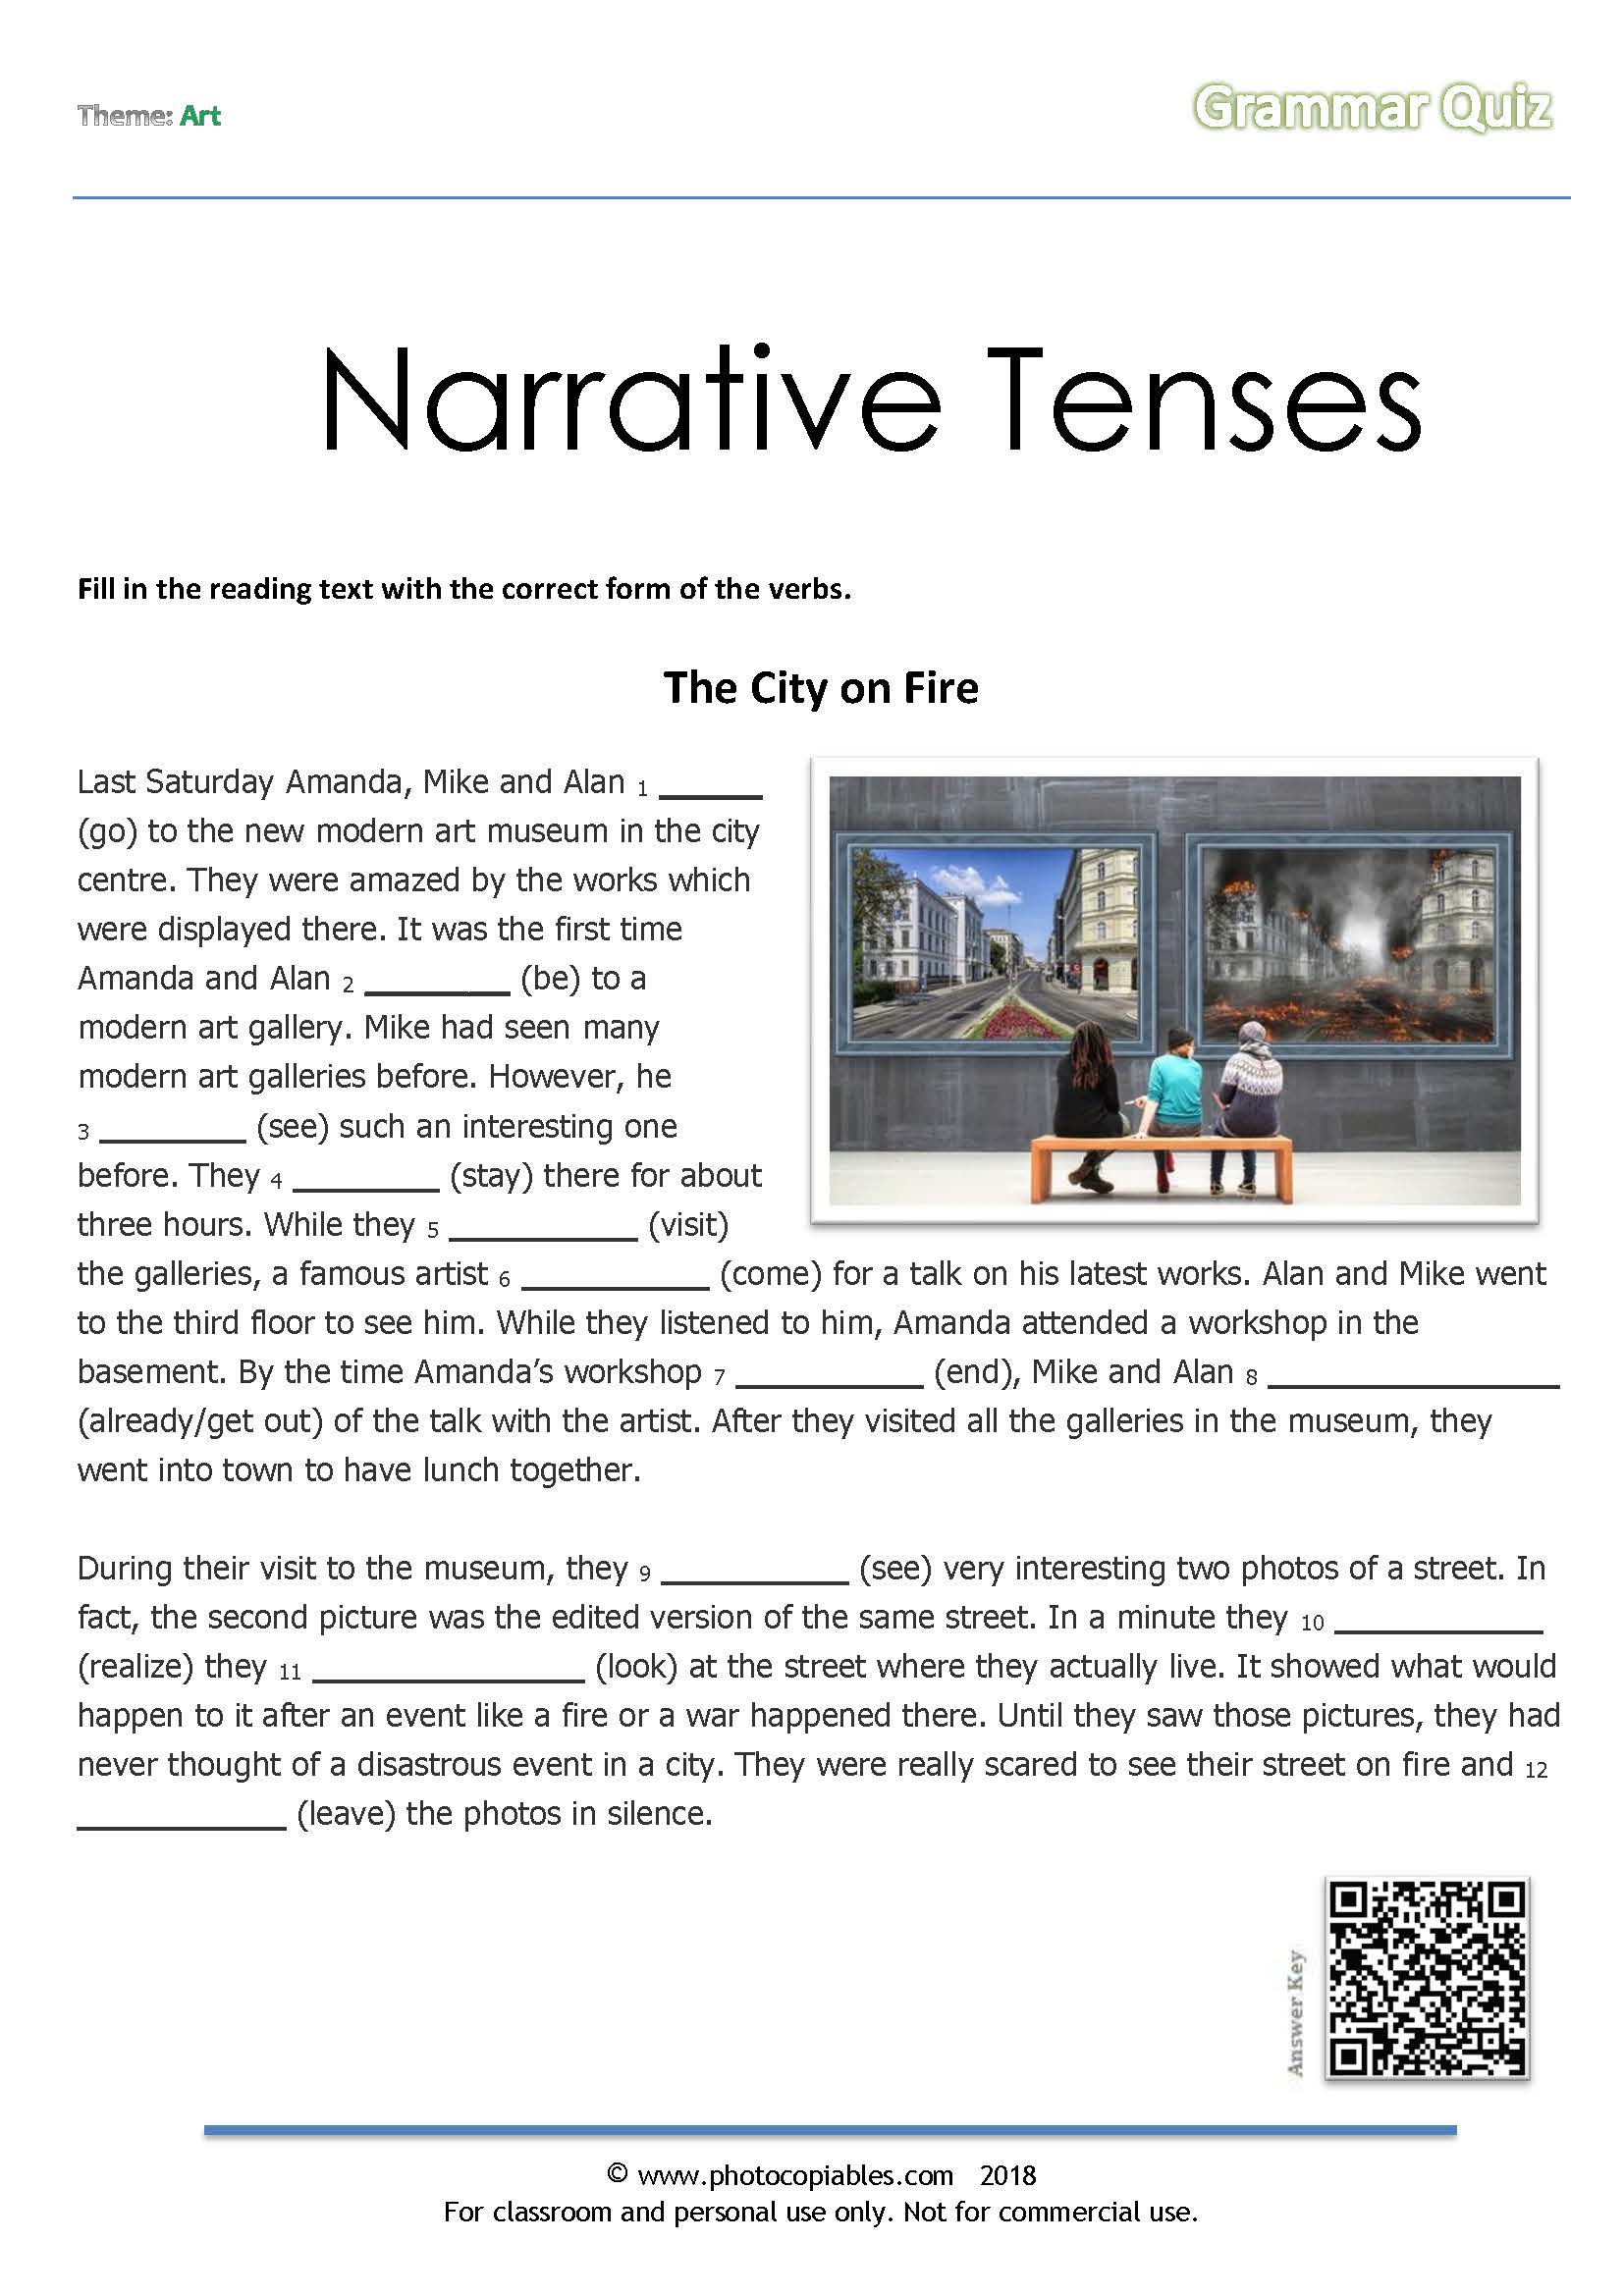 narrative-tenses-grammar-quiz-photocopiables